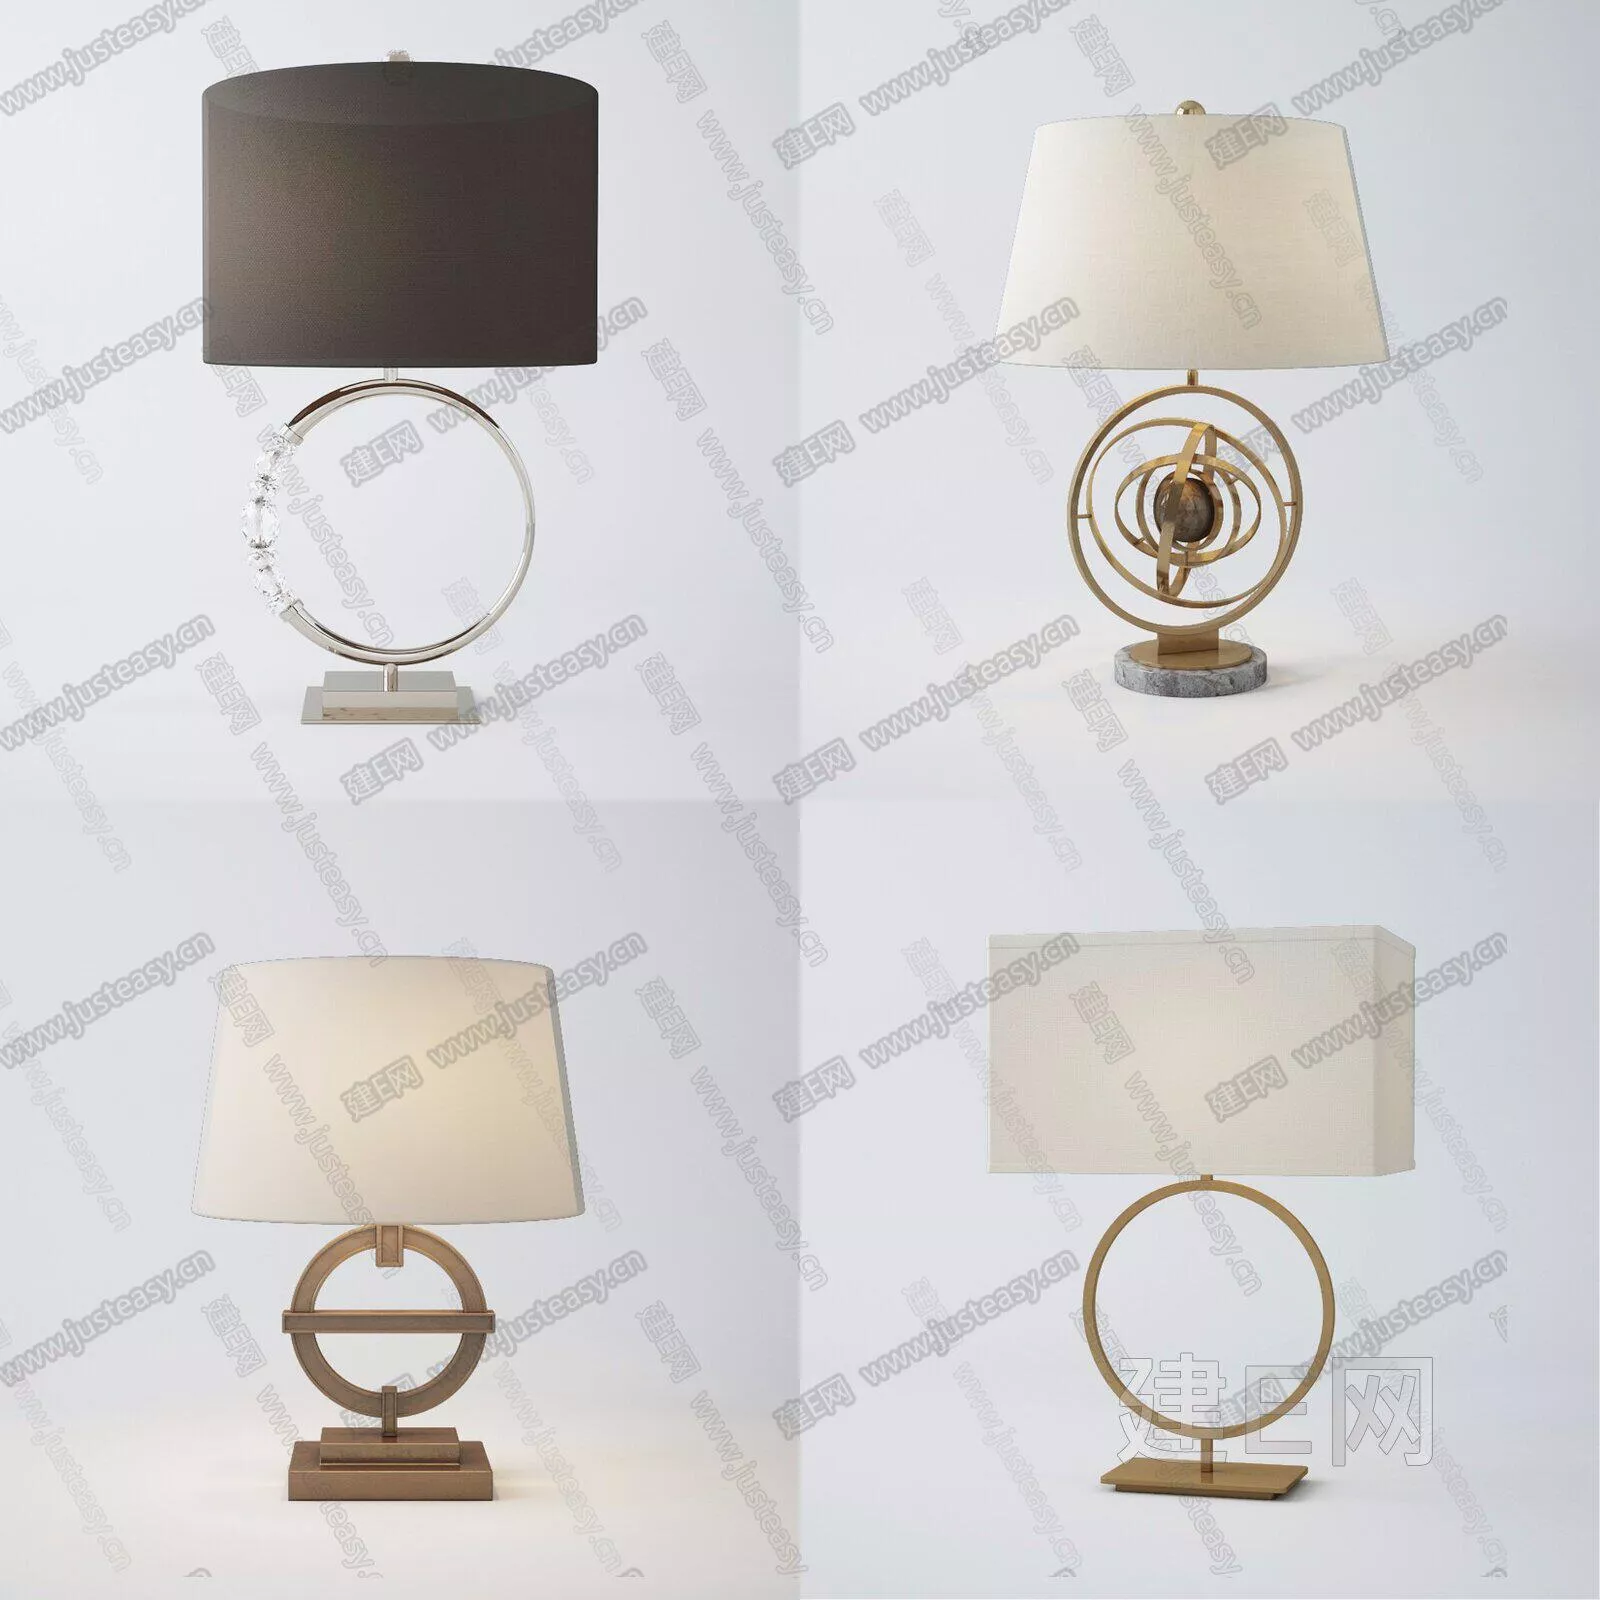 MODERN TABLE LAMP - SKETCHUP 3D MODEL - ENSCAPE - 112807258